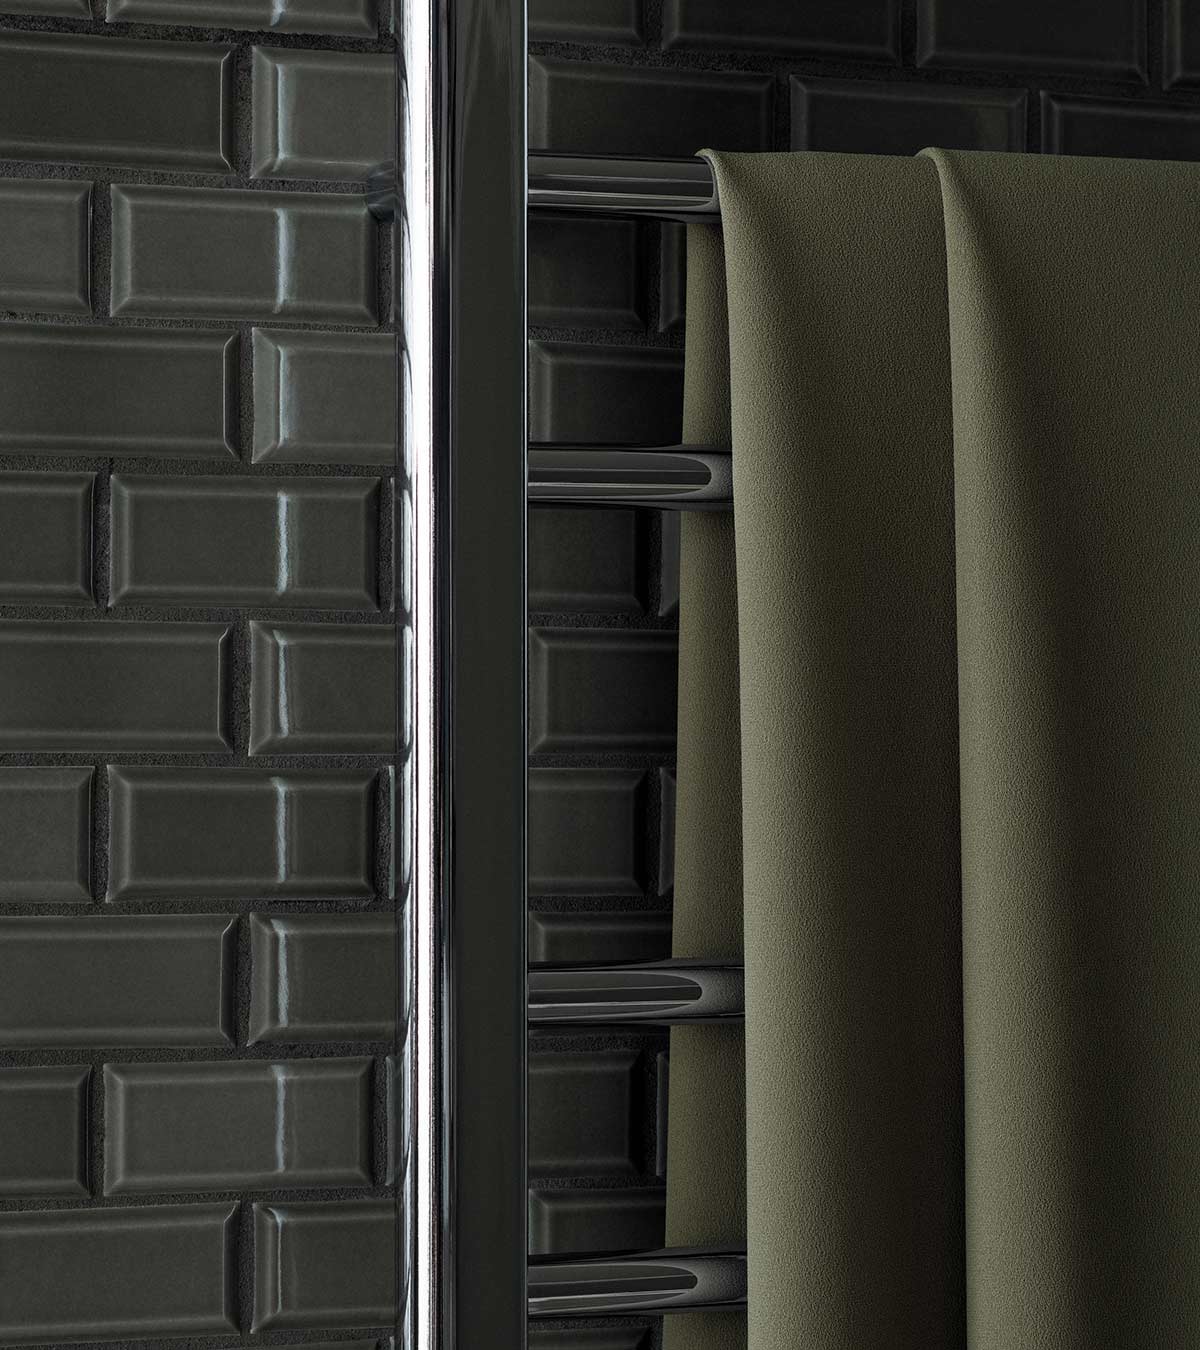 Svedbergs Bathroom - Heated towel rails